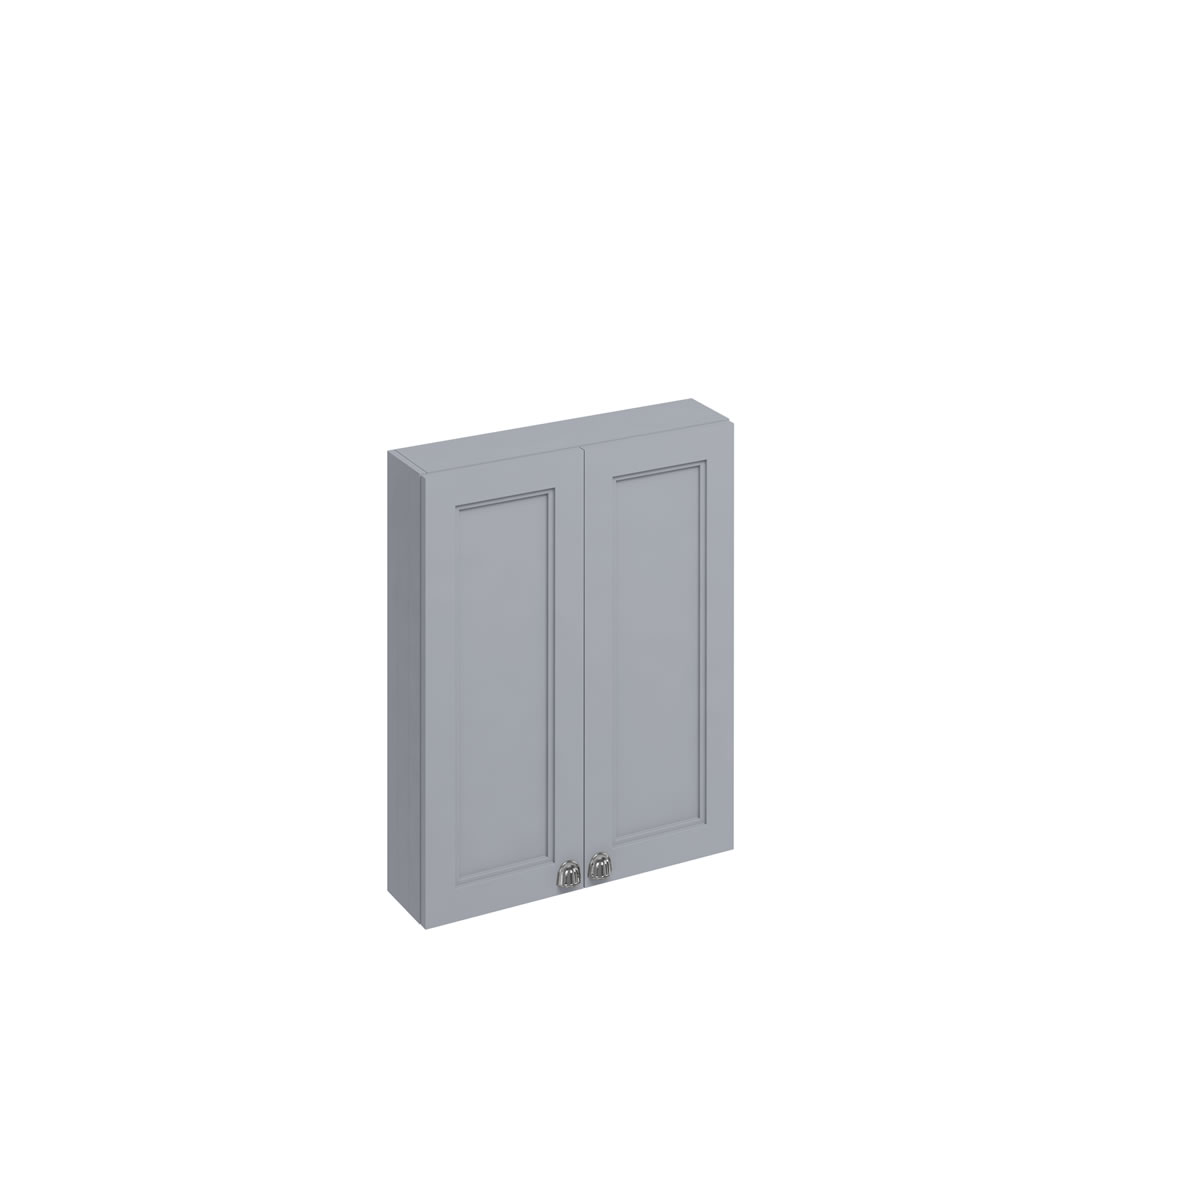 60 Double Door Wall Unit - Classic Grey